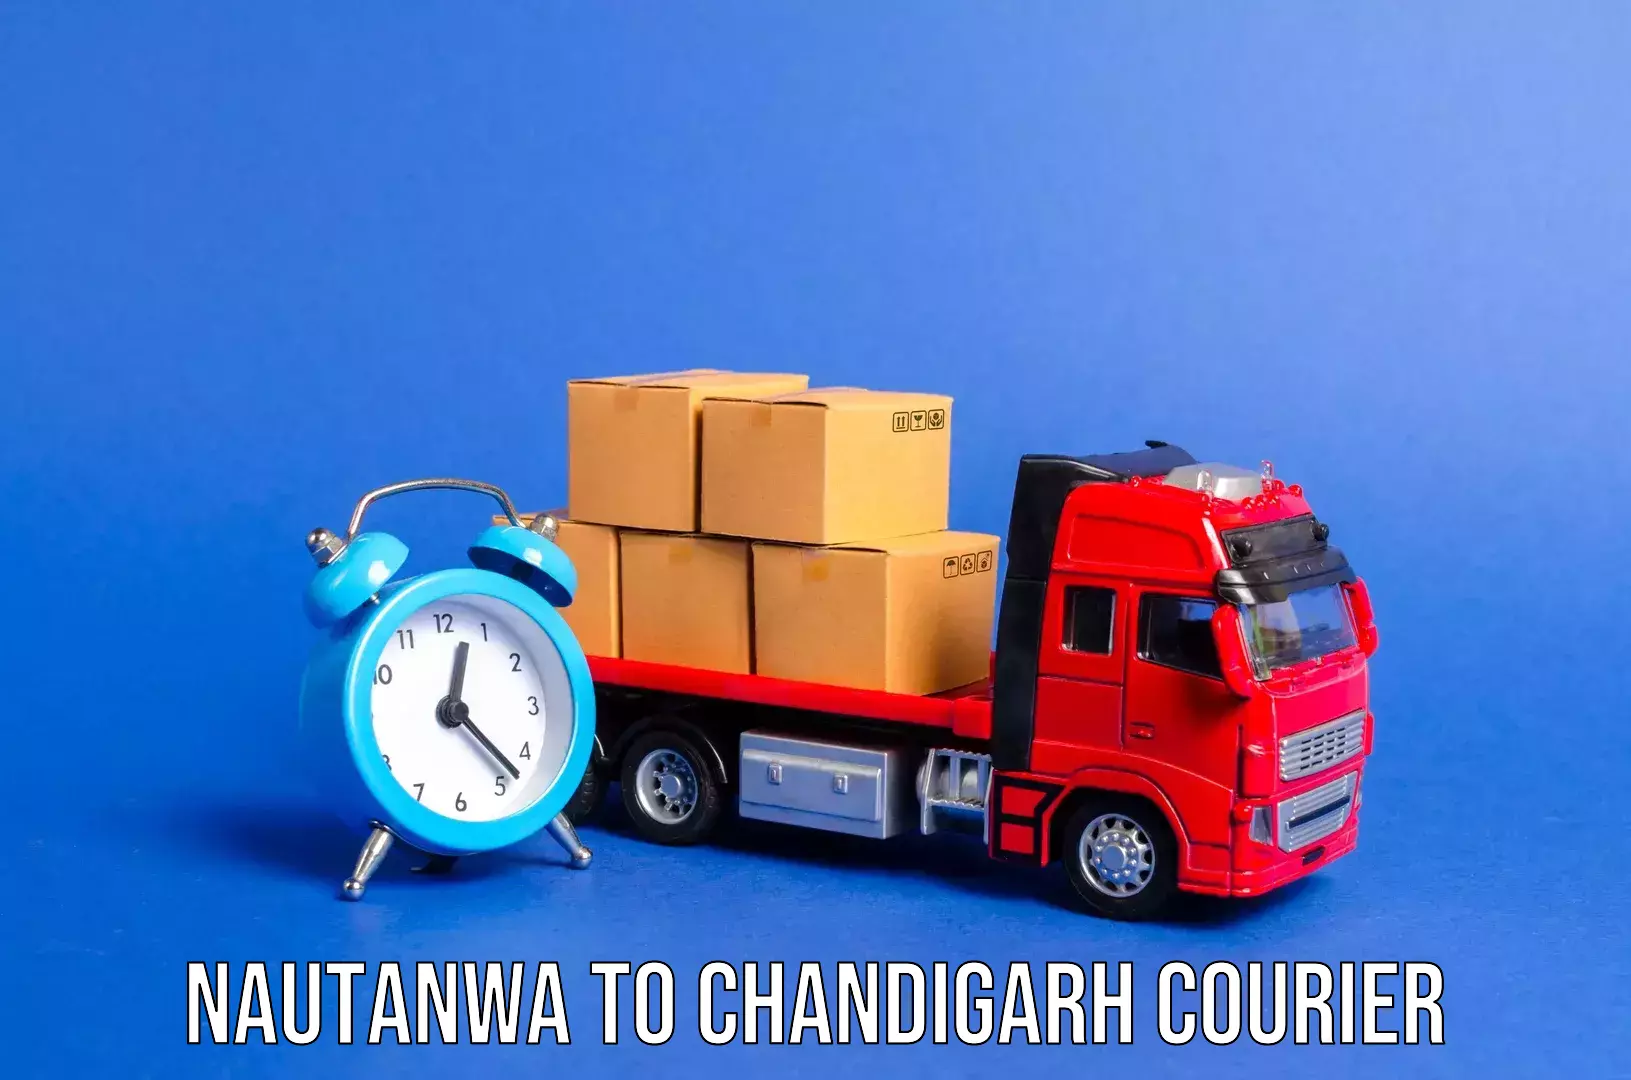 Luggage transfer service Nautanwa to Panjab University Chandigarh